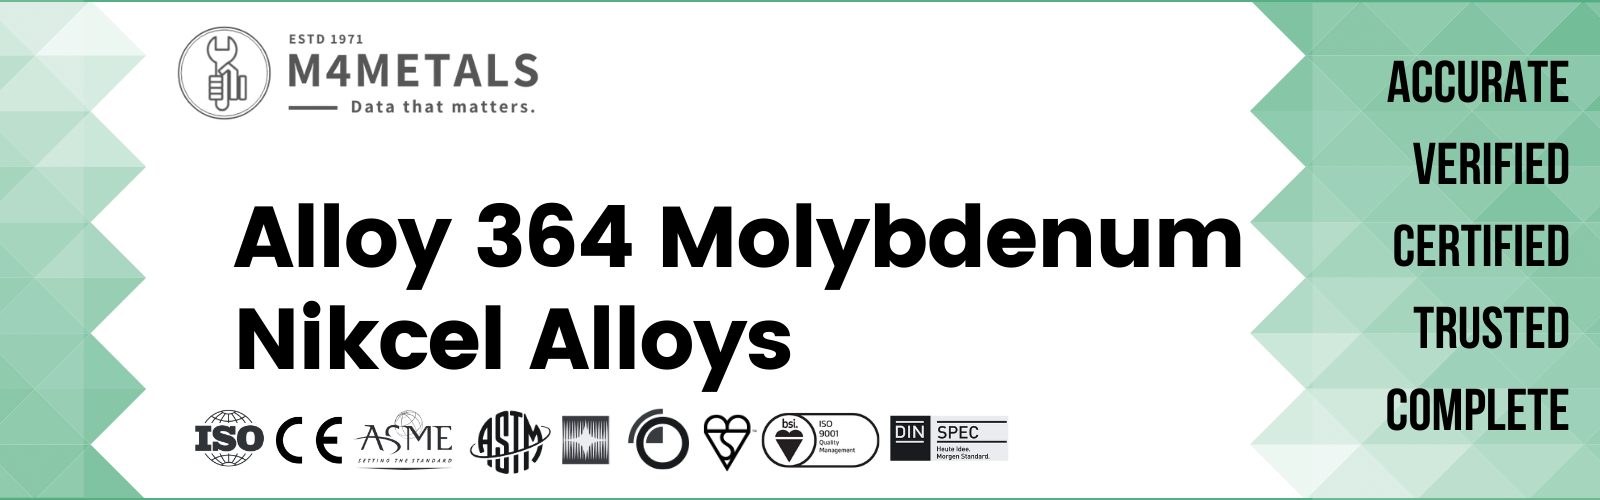 Molybdenum Alloy 364